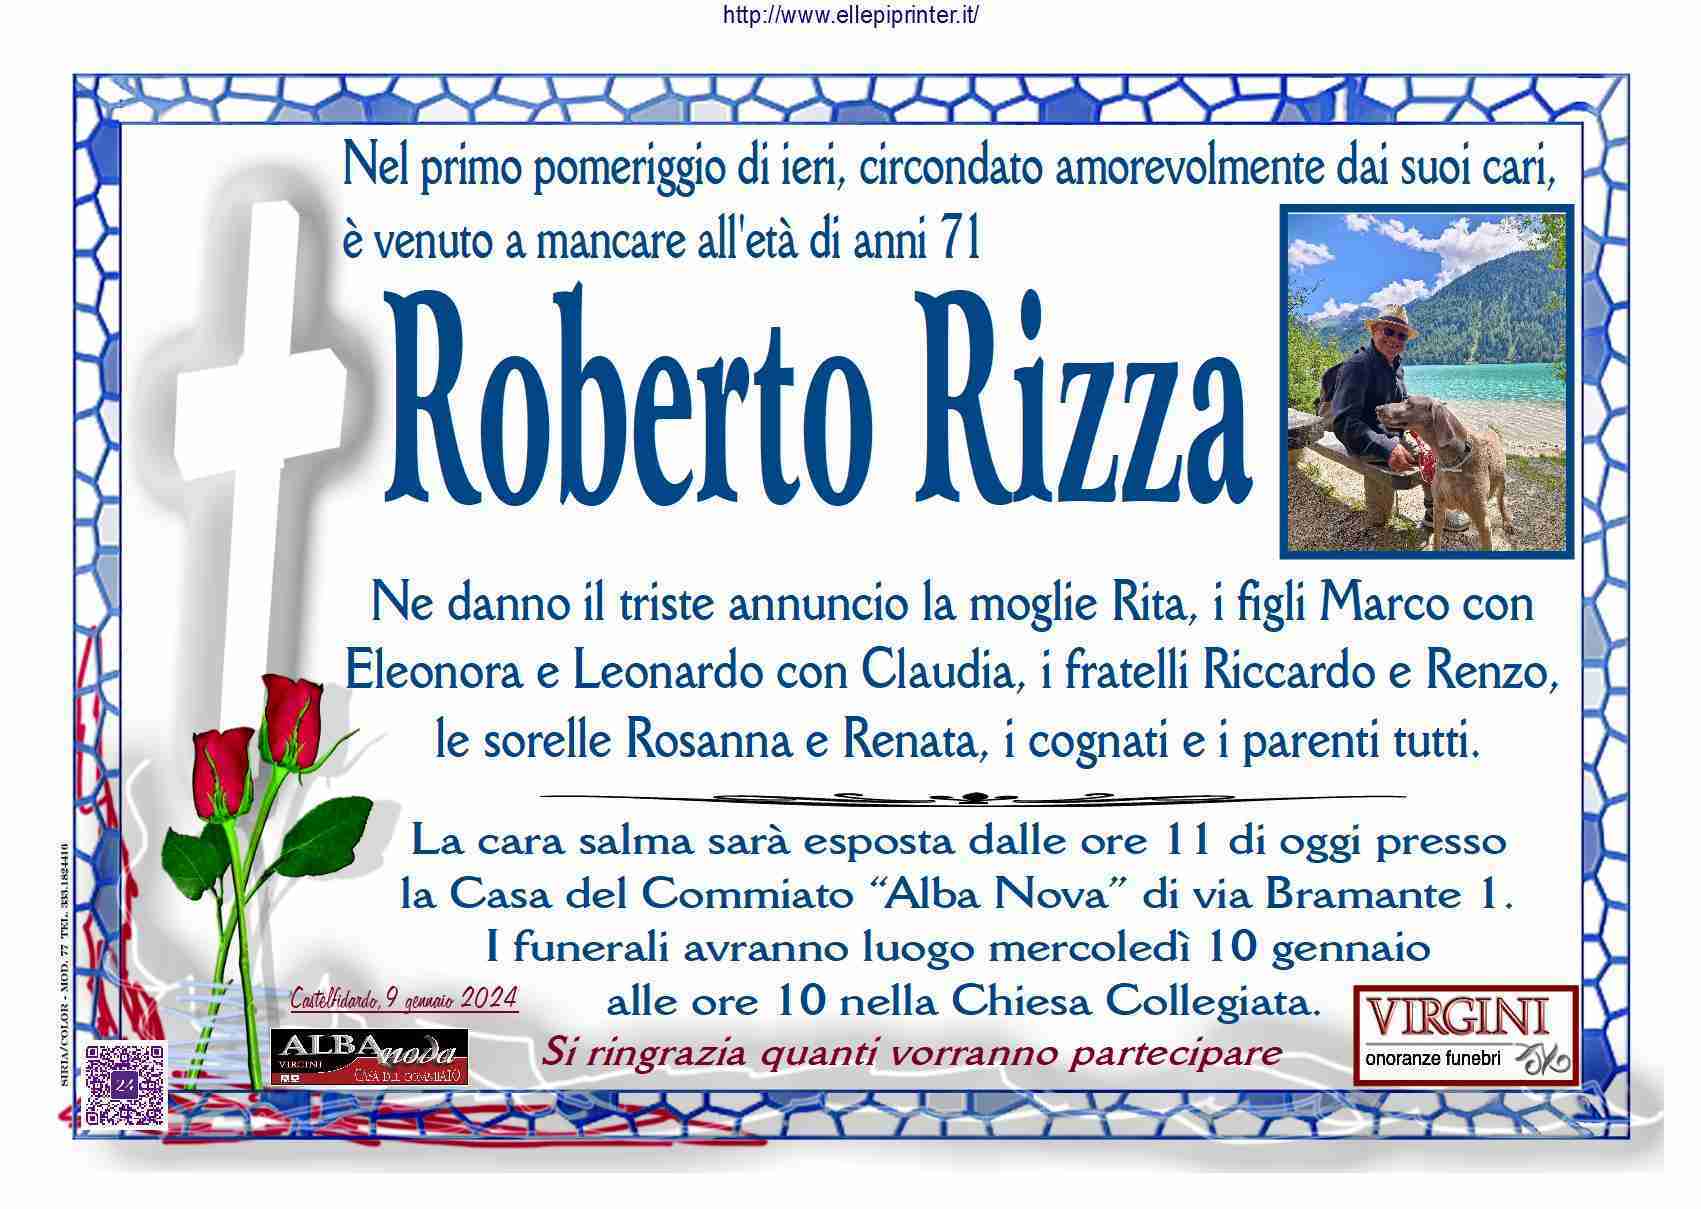 Roberto Rizza